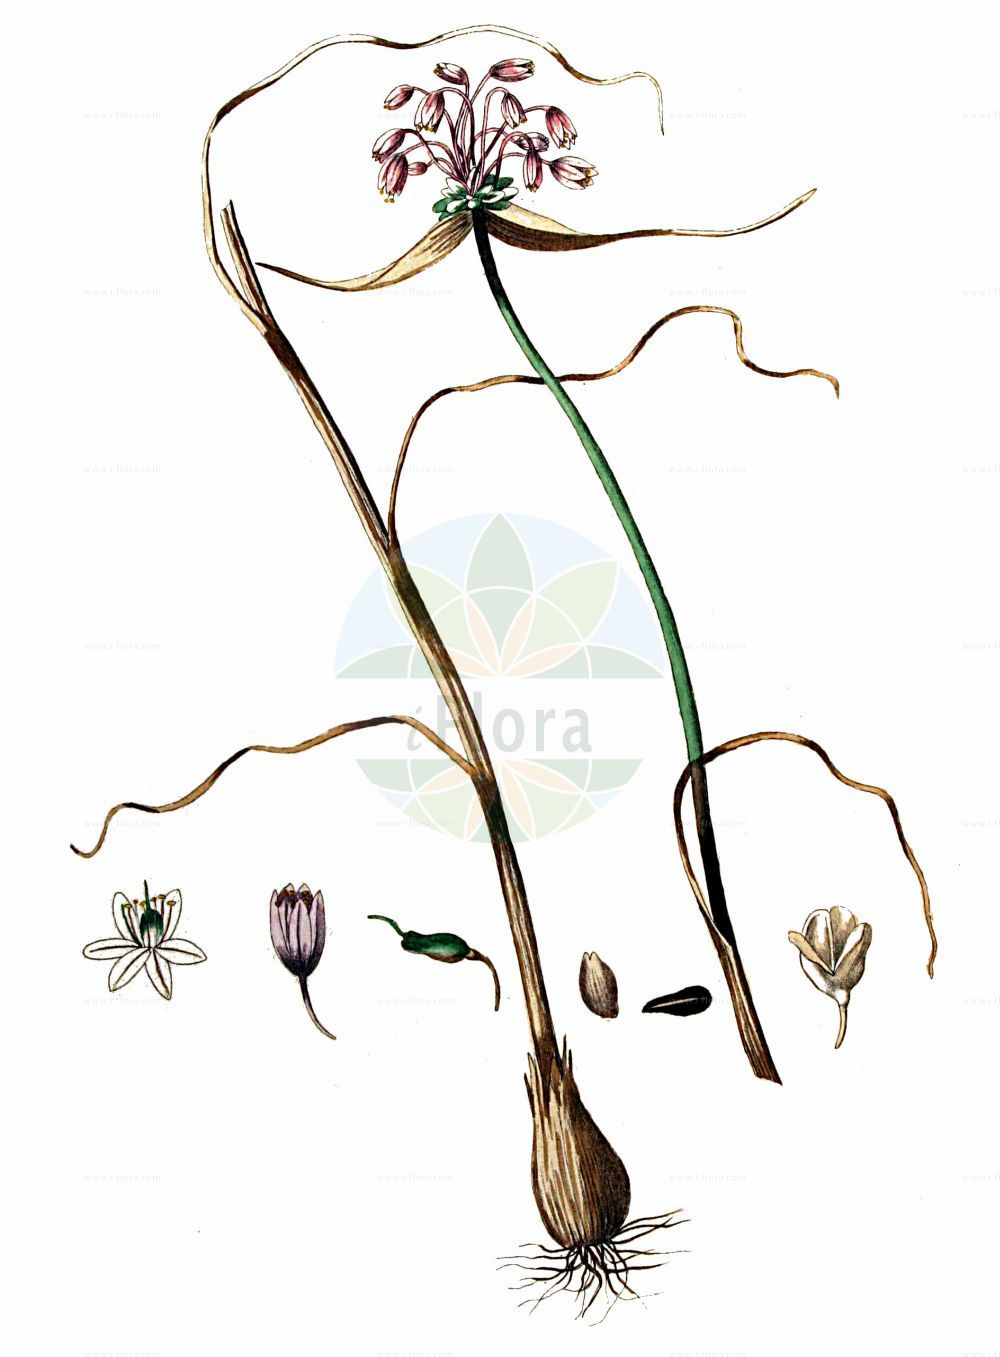 Historische Abbildung von Allium oleraceum (Gemüse-Lauch - Field Garlic). Das Bild zeigt Blatt, Bluete, Frucht und Same. ---- Historical Drawing of Allium oleraceum (Gemüse-Lauch - Field Garlic). The image is showing leaf, flower, fruit and seed.(Allium oleraceum,Gemüse-Lauch,Field Garlic,Allium complanatum,Allium intermedium,Allium oleraceum,Allium oxypetalum,Allium parviflorum,Allium scabrum,Allium virens,Cepa oleracea,Codonoprasum alpicola,Codonoprasum complanatum,Codonoprasum intermedium,Codonoprasum oleraceum,Codonoprasum viridiflorum,Porrum oleraceum,Raphione oleracea,Gemuese-Lauch,Glocken-Lauch,Field Garlic,Pot-herb Onion,Allium,Lauch,Leek,Amaryllidaceae,Narzissengewächse,Amaryllis family,Blatt,Bluete,Frucht,Same,leaf,flower,fruit,seed,Kops (1800-1934))